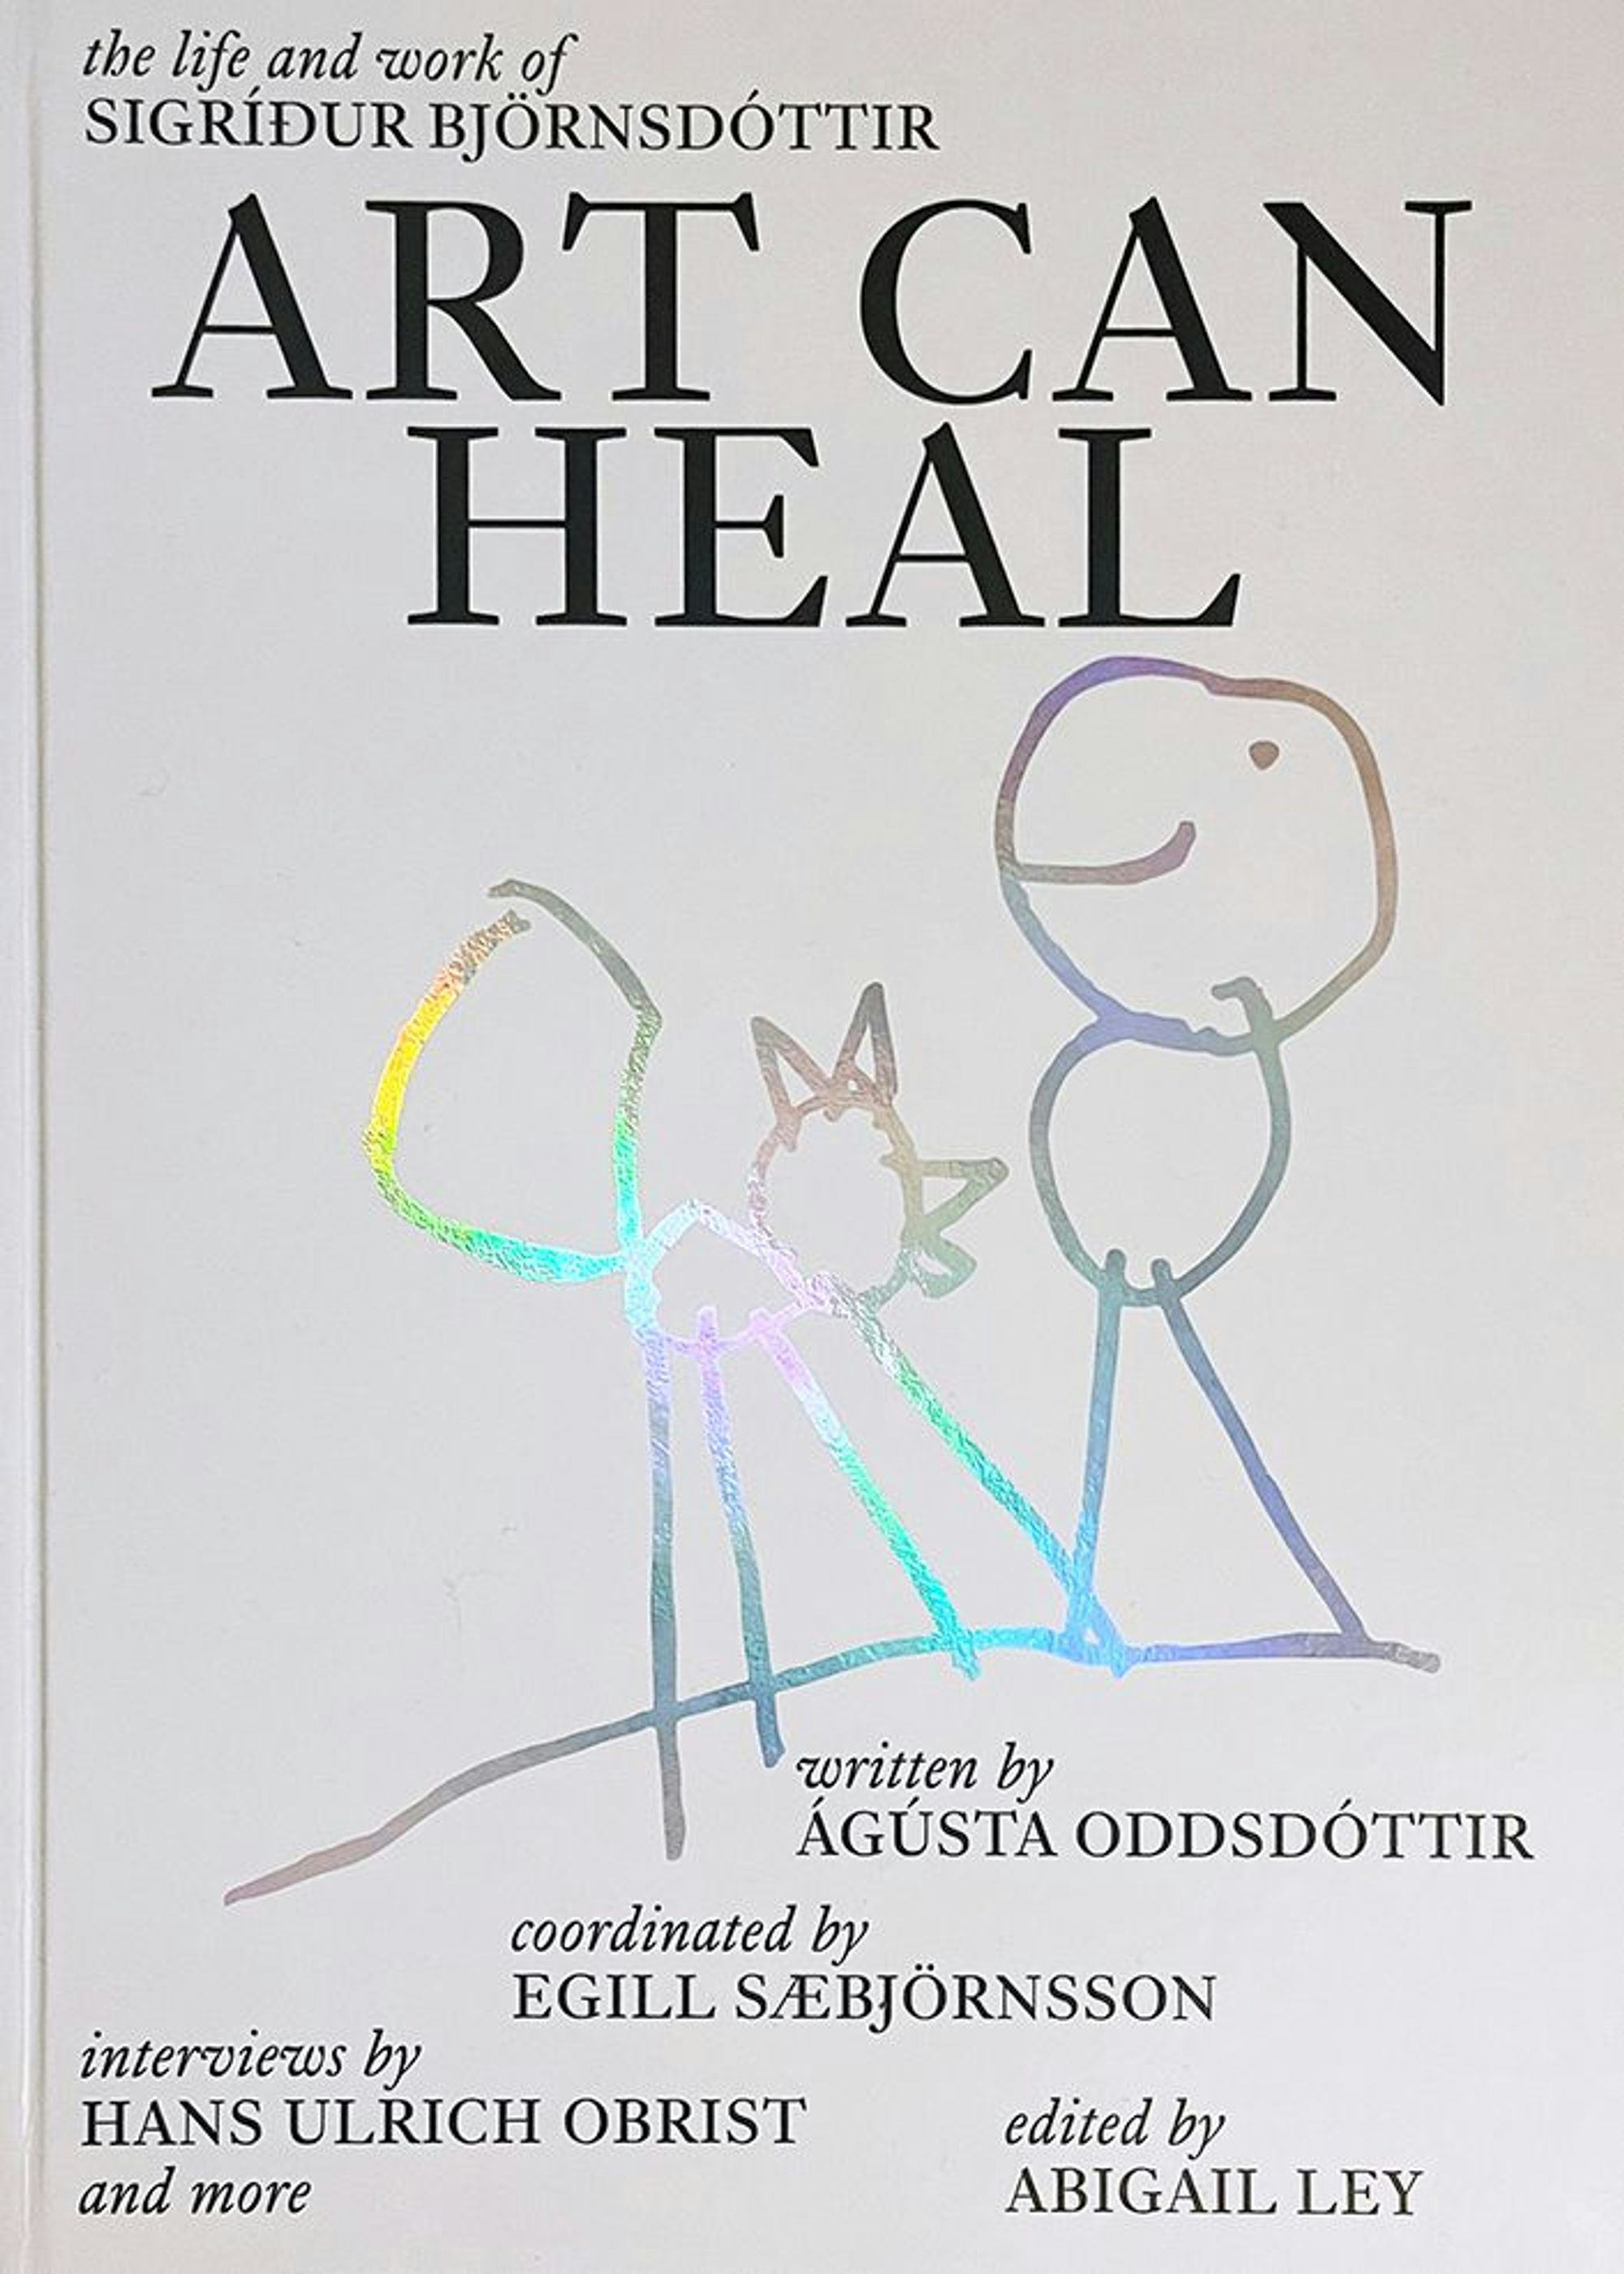 Art can heal